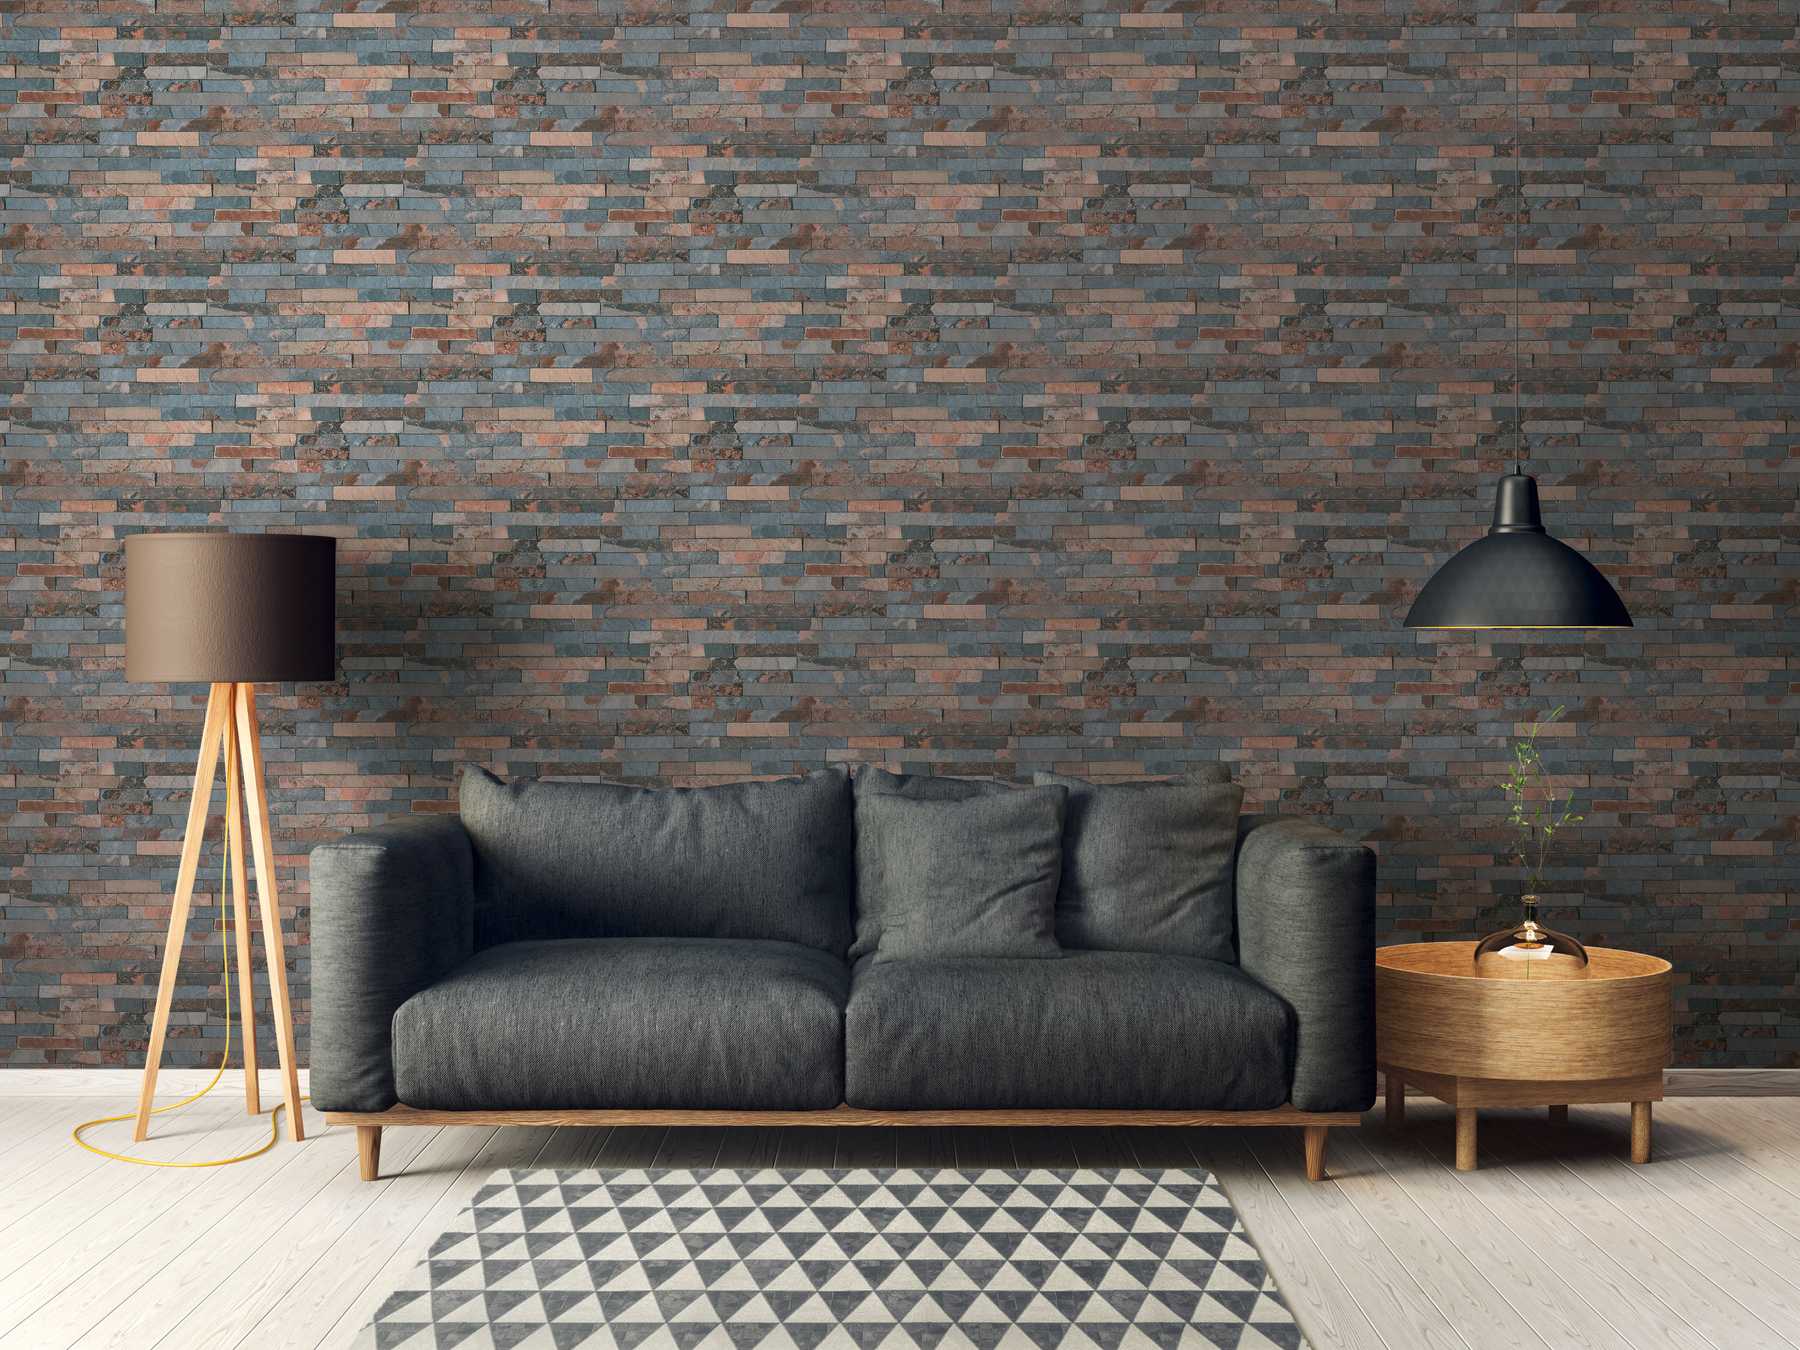             Tapete Steinoptik mit dunkler Mauer aus Natursteinen – Grau, Braun, Schwarz
        